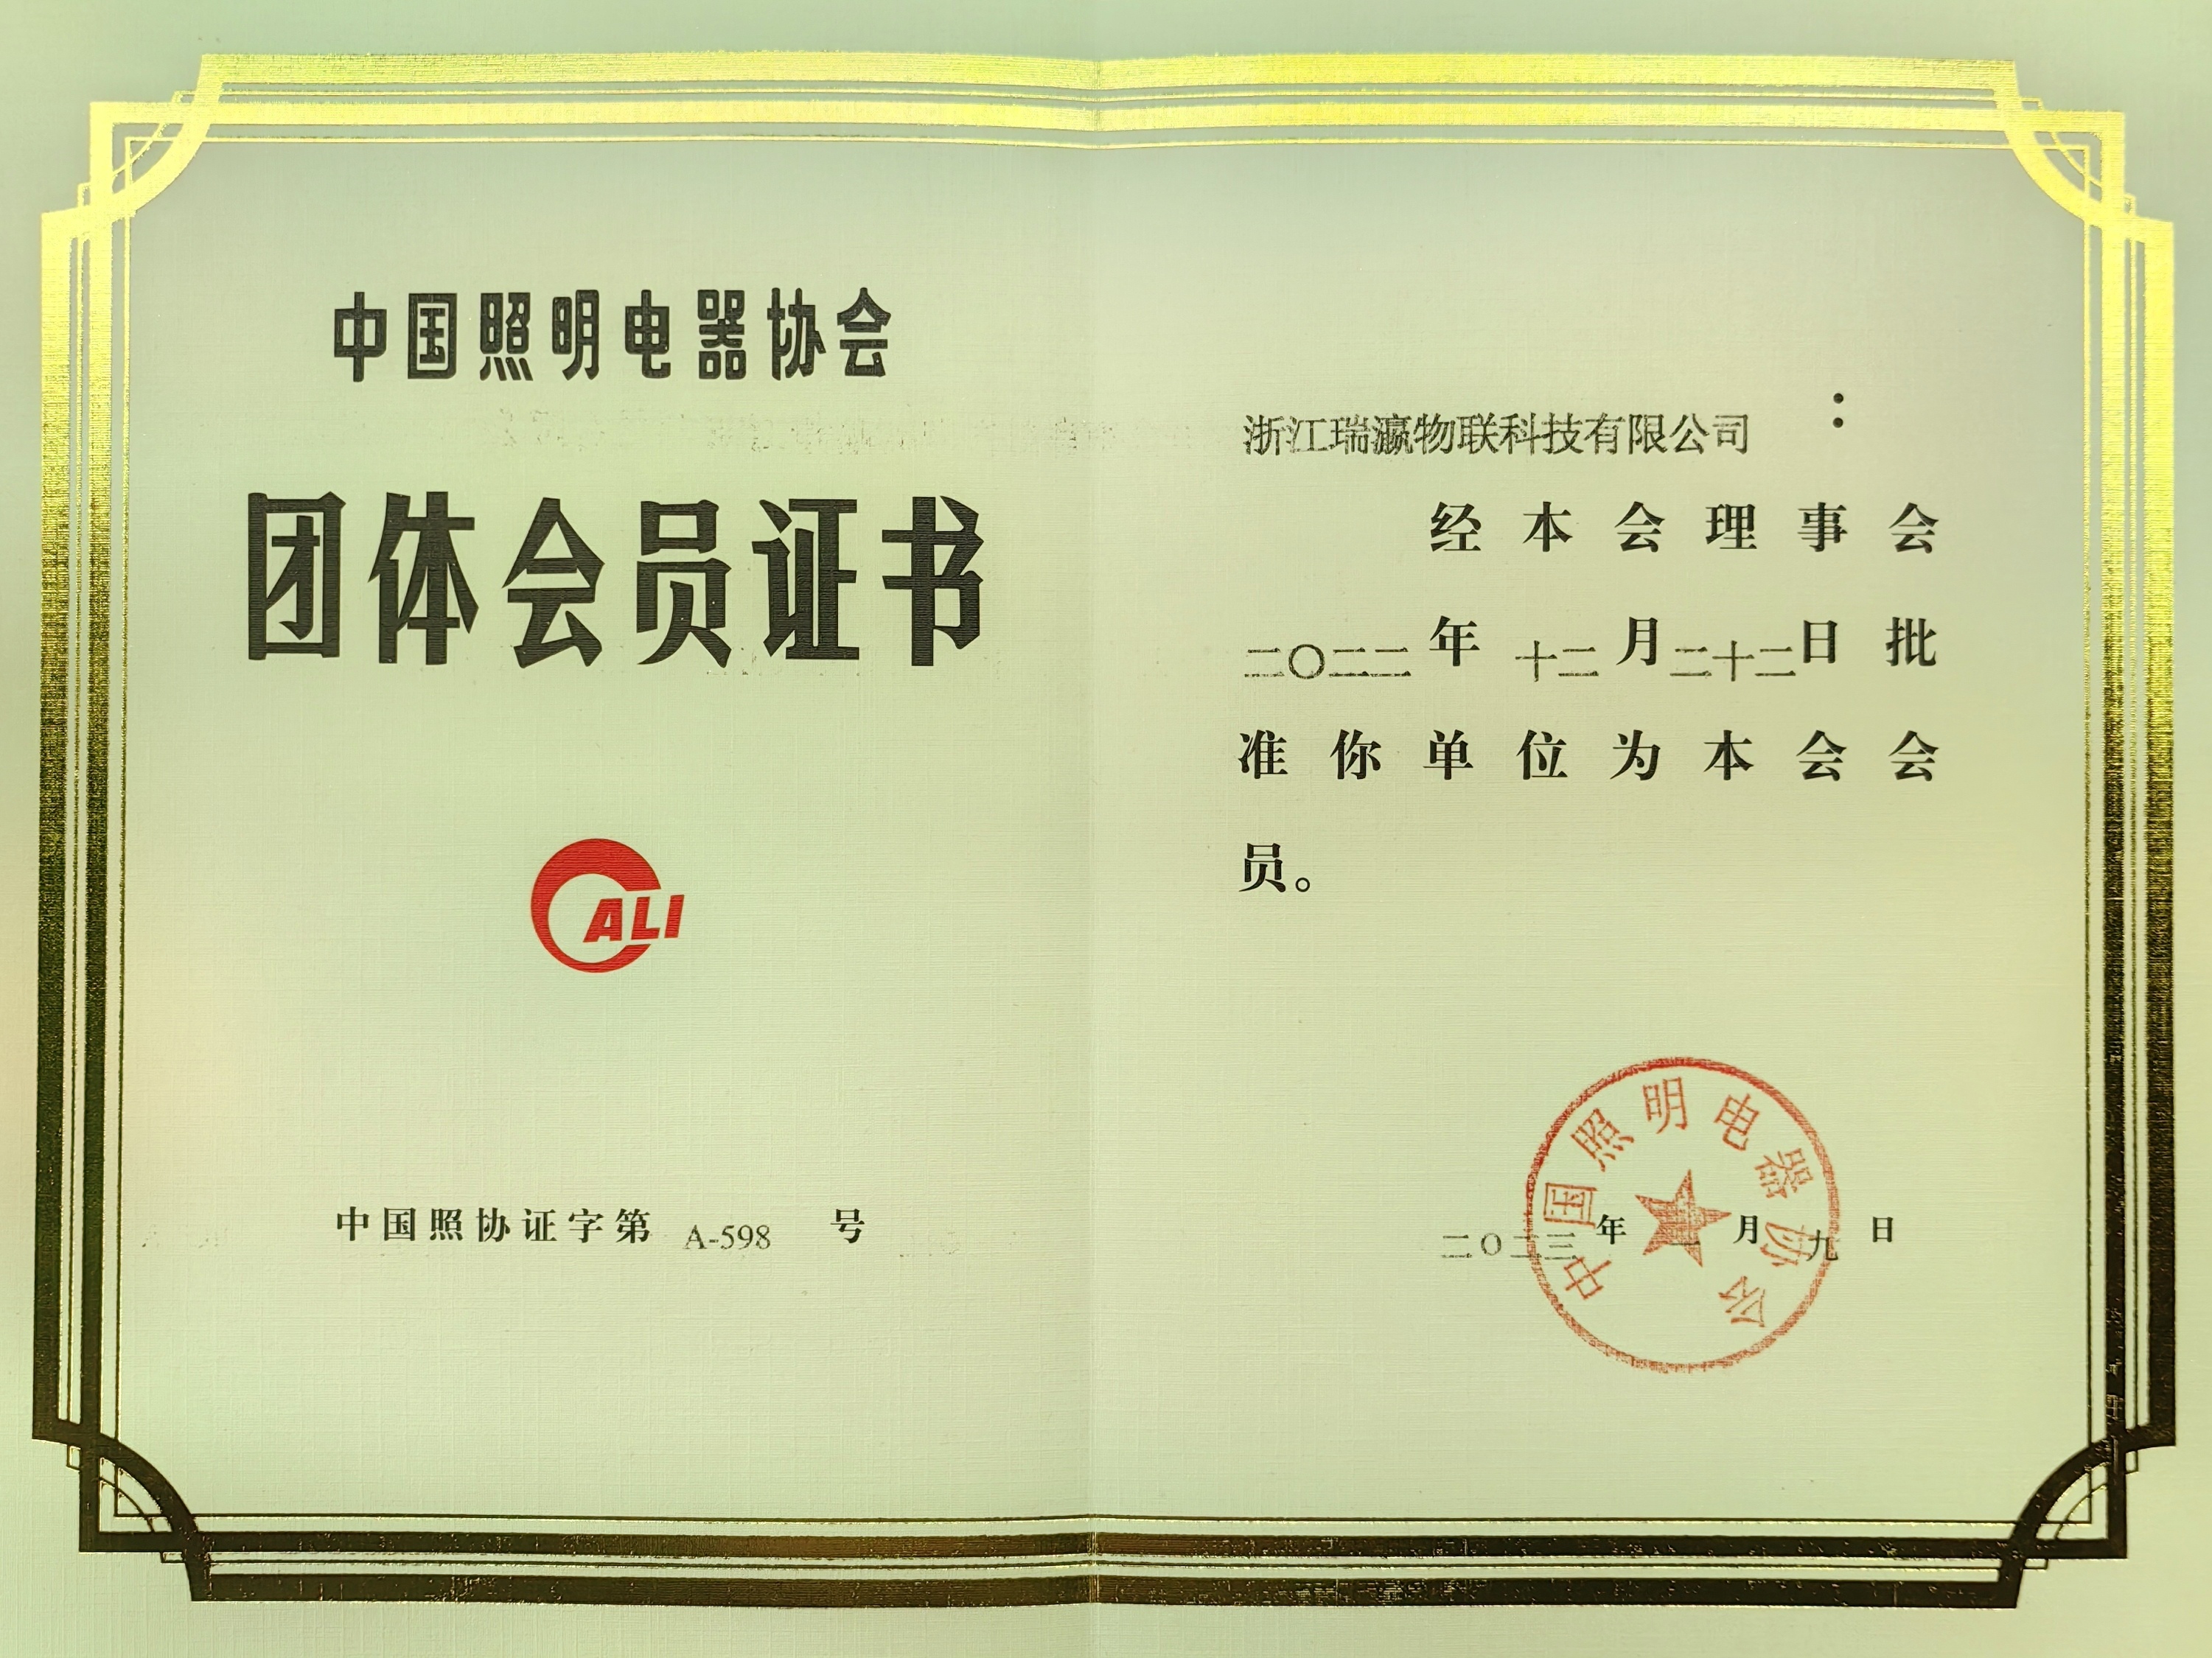 中国照明电器协会会员证书.jpg